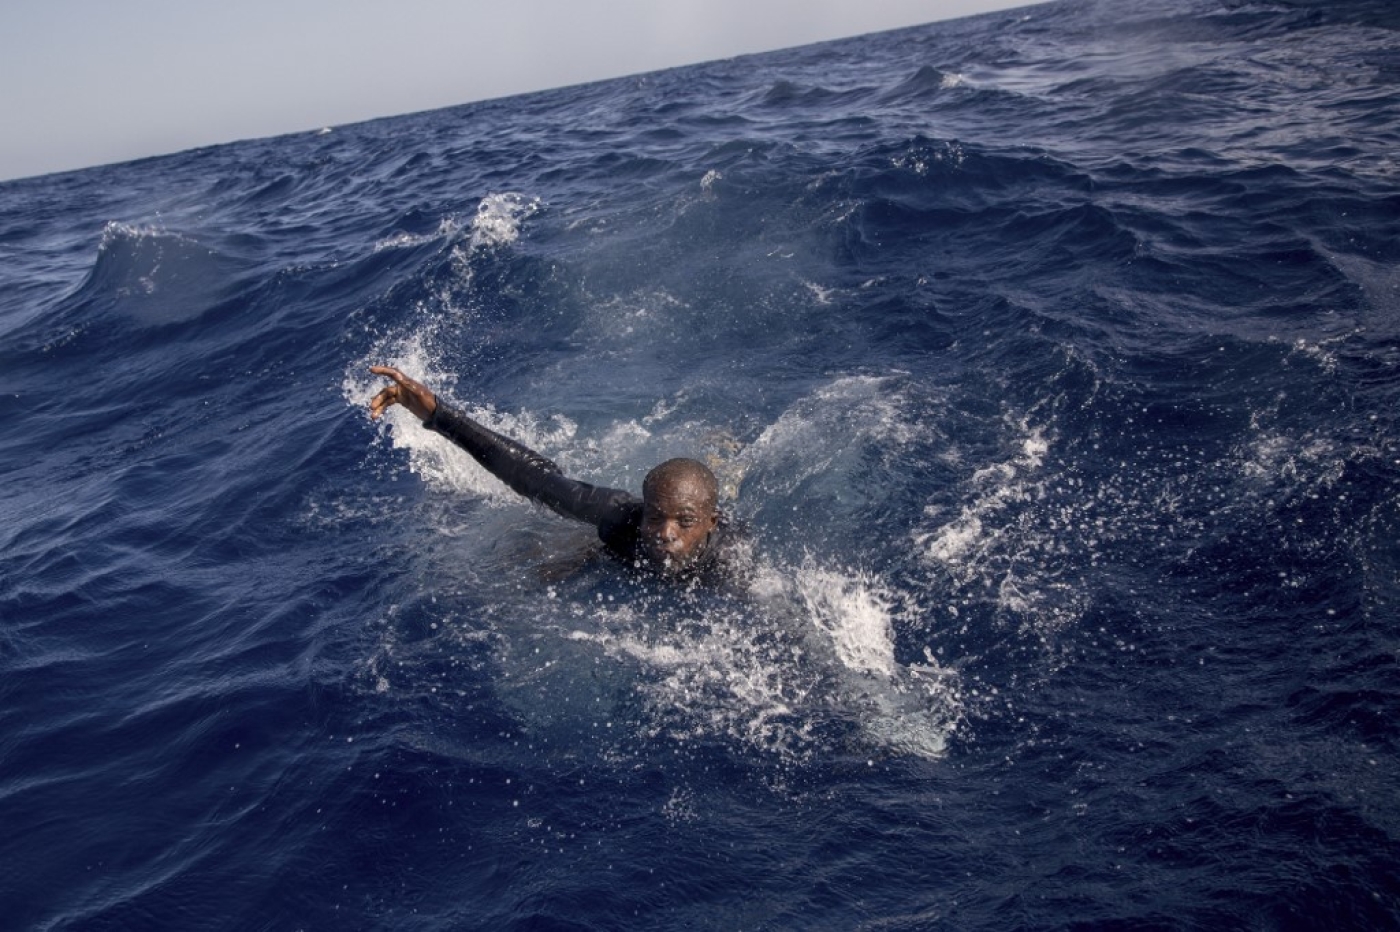 Ces derniers mois, selon les chiffres de l’Organisation internationale pour les migrations (OIM) publiés en février, plus de 18 000 migrants sont morts ou disparus en Méditerranée depuis 2014, contre 1 553 en 2021 (AFP/Alessio Paduano)